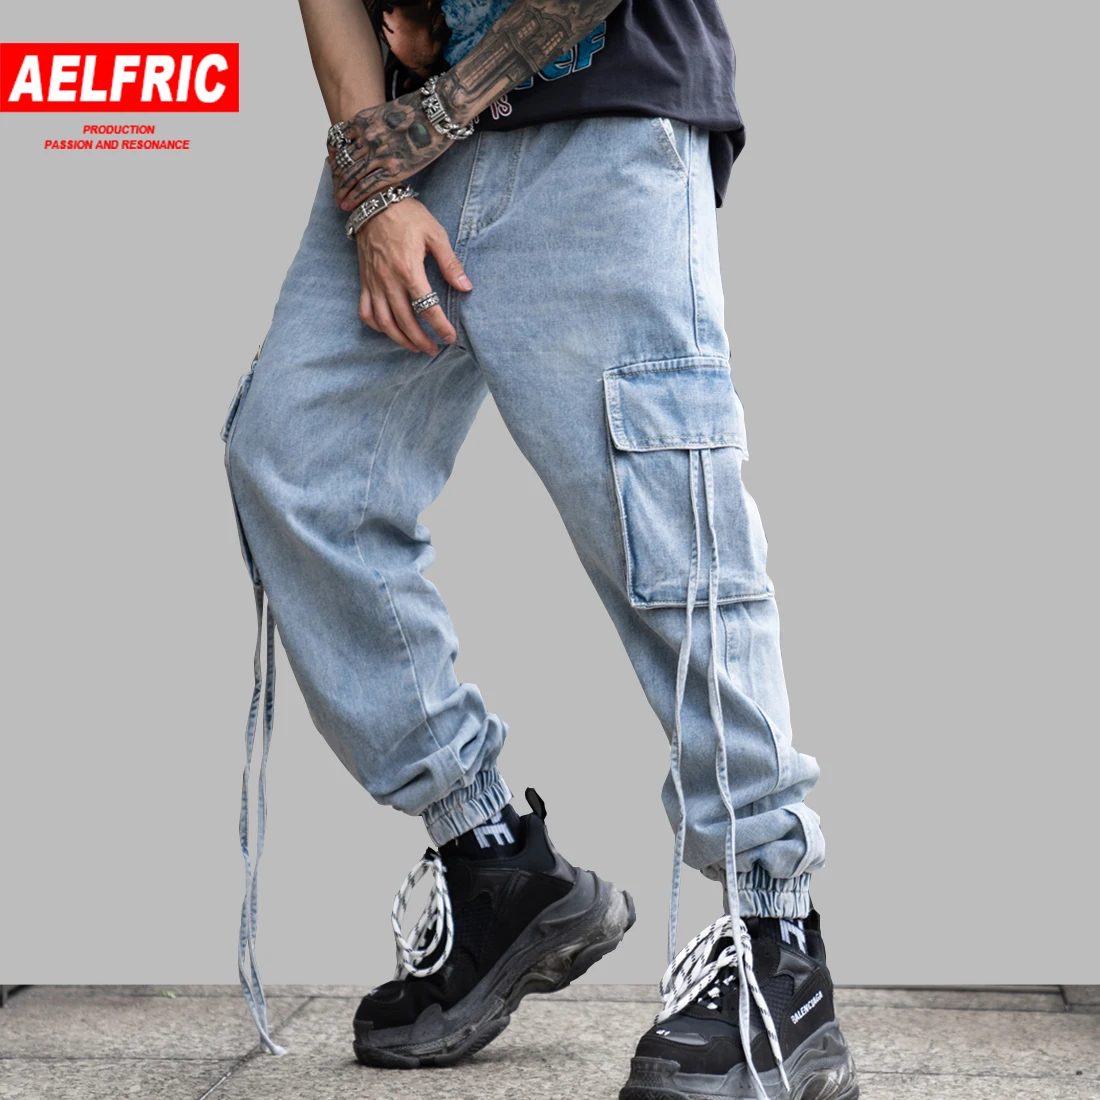 Эльфрик карманов джоггеры Для мужчин 2019 весенне-летний свободный крой джинсы прямые шаровары, штаны для бега джинсовые Модные